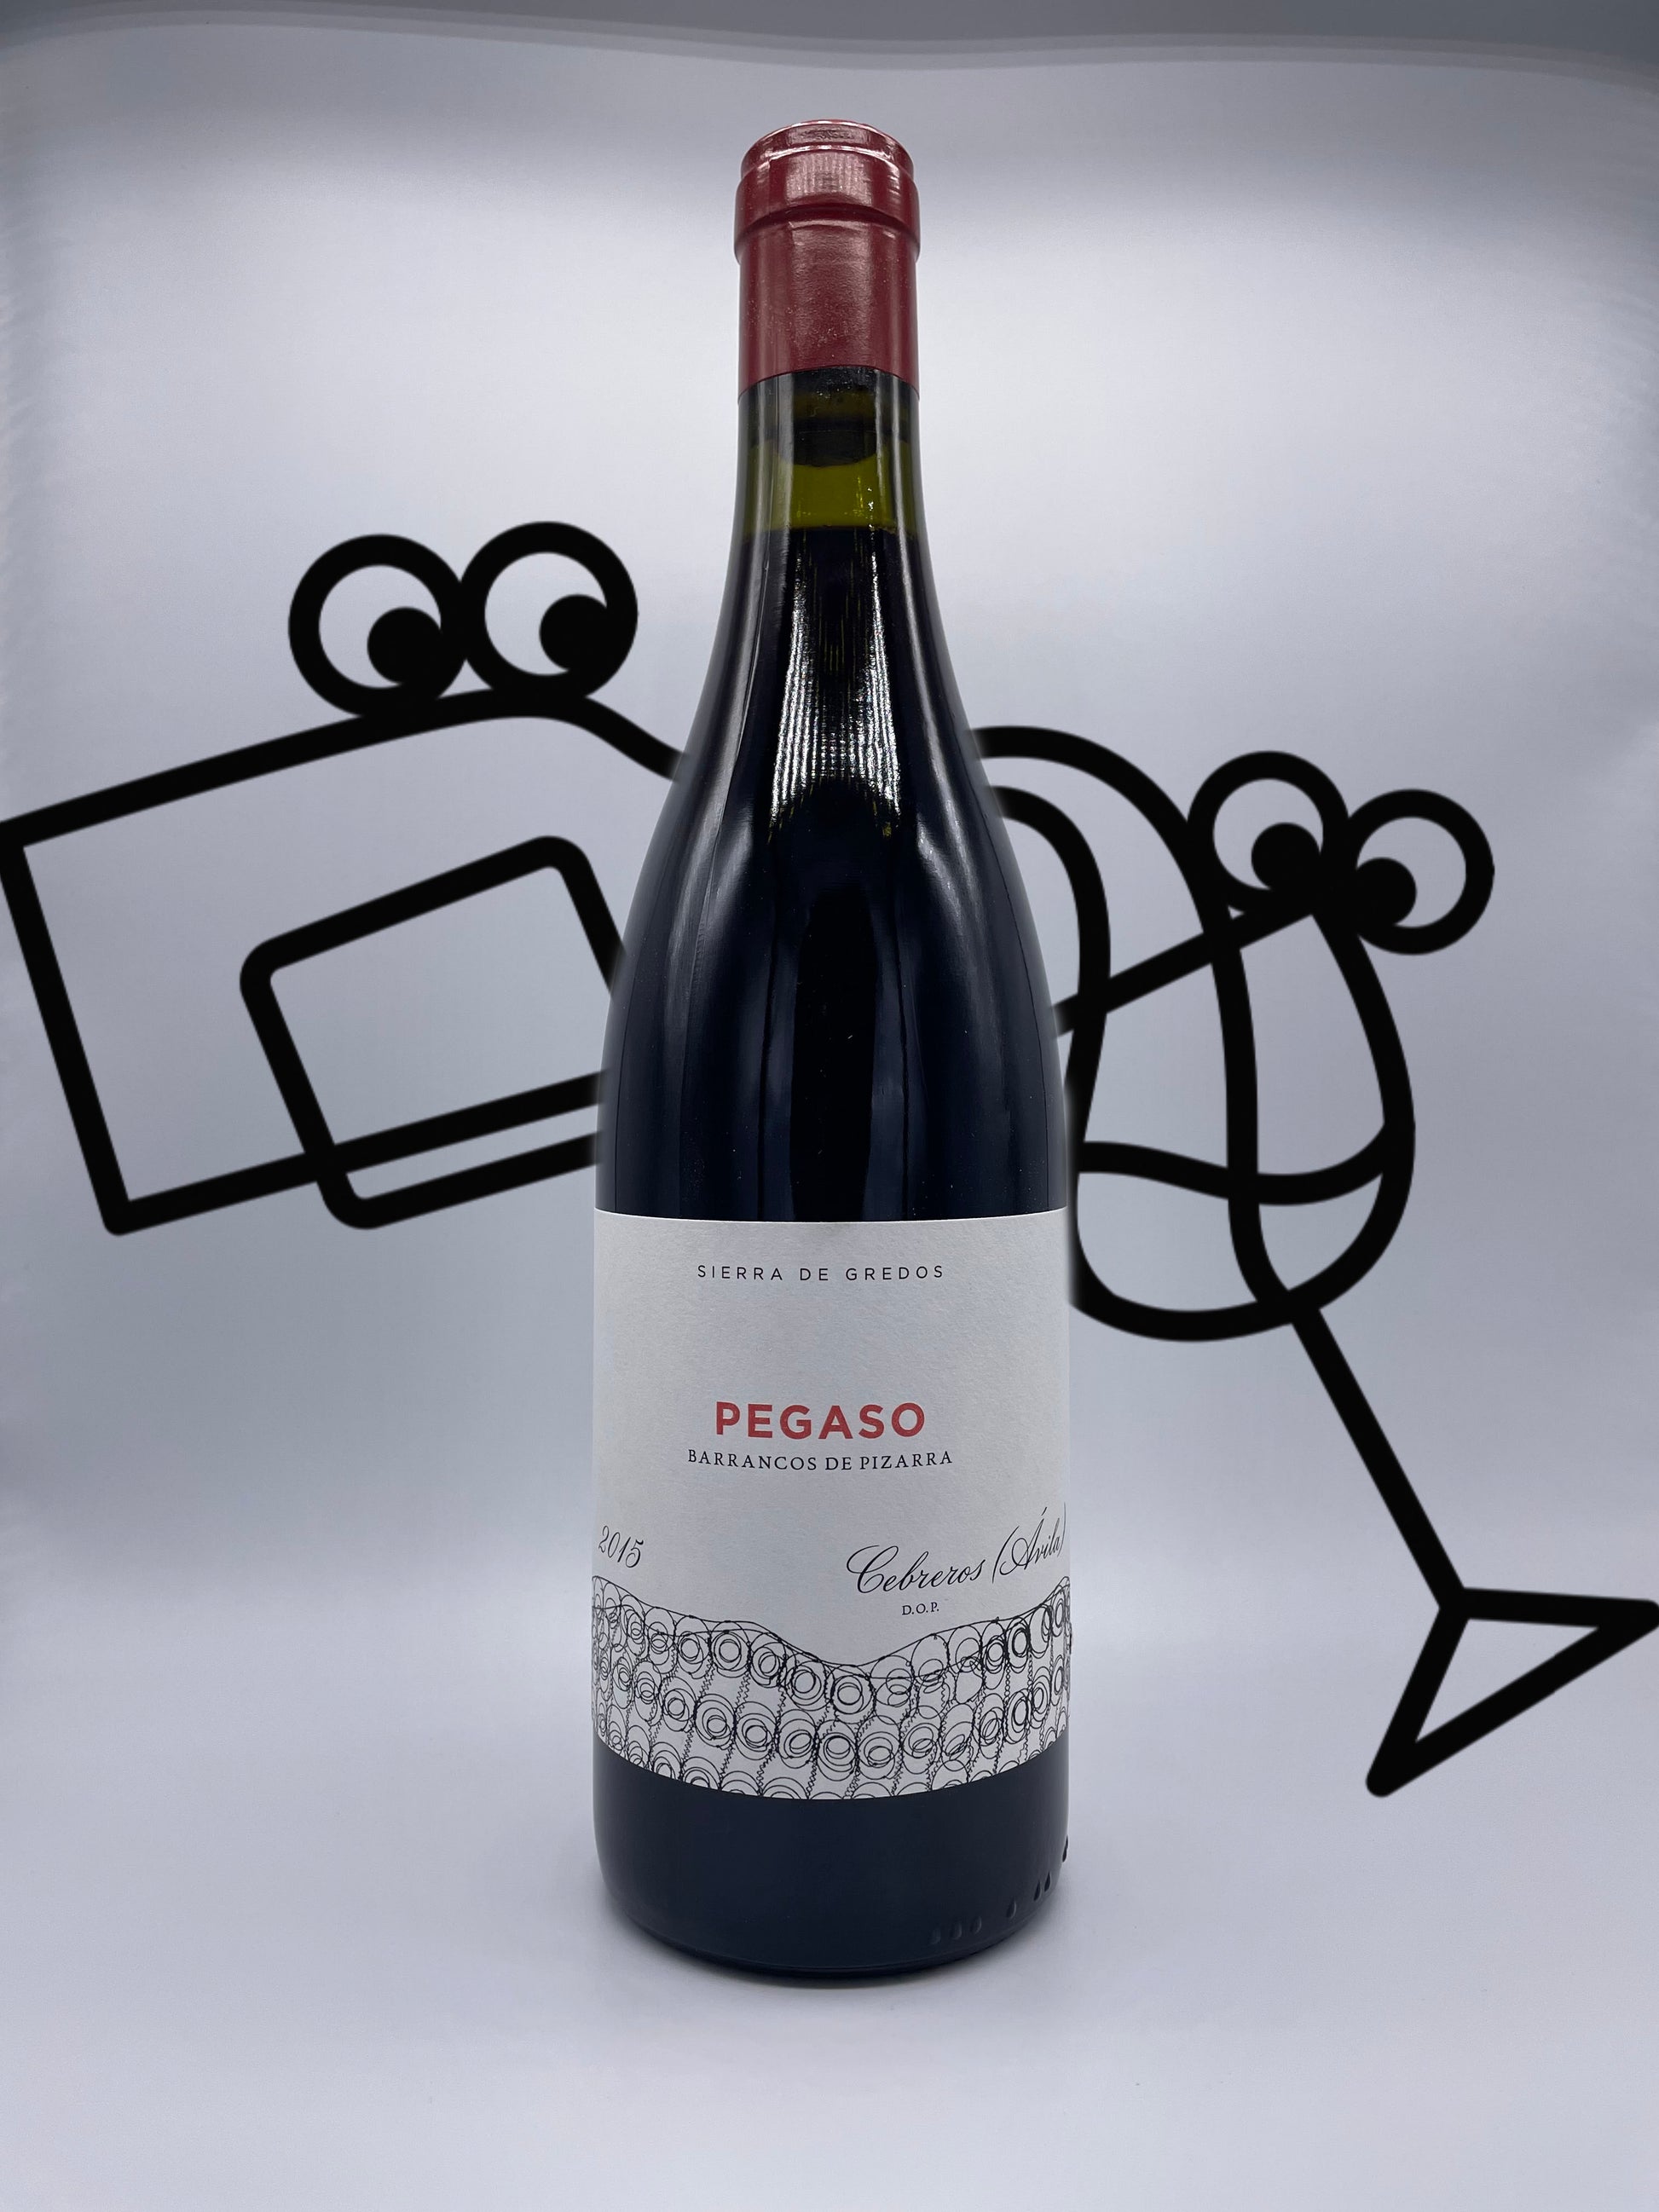 Compania de Vinos Telmo Rodriguez 'Pegaso Barrancos de Pizarra' Garnacha Vino de la Tierra de Castilla y Leon, Spain Williston Park Wines